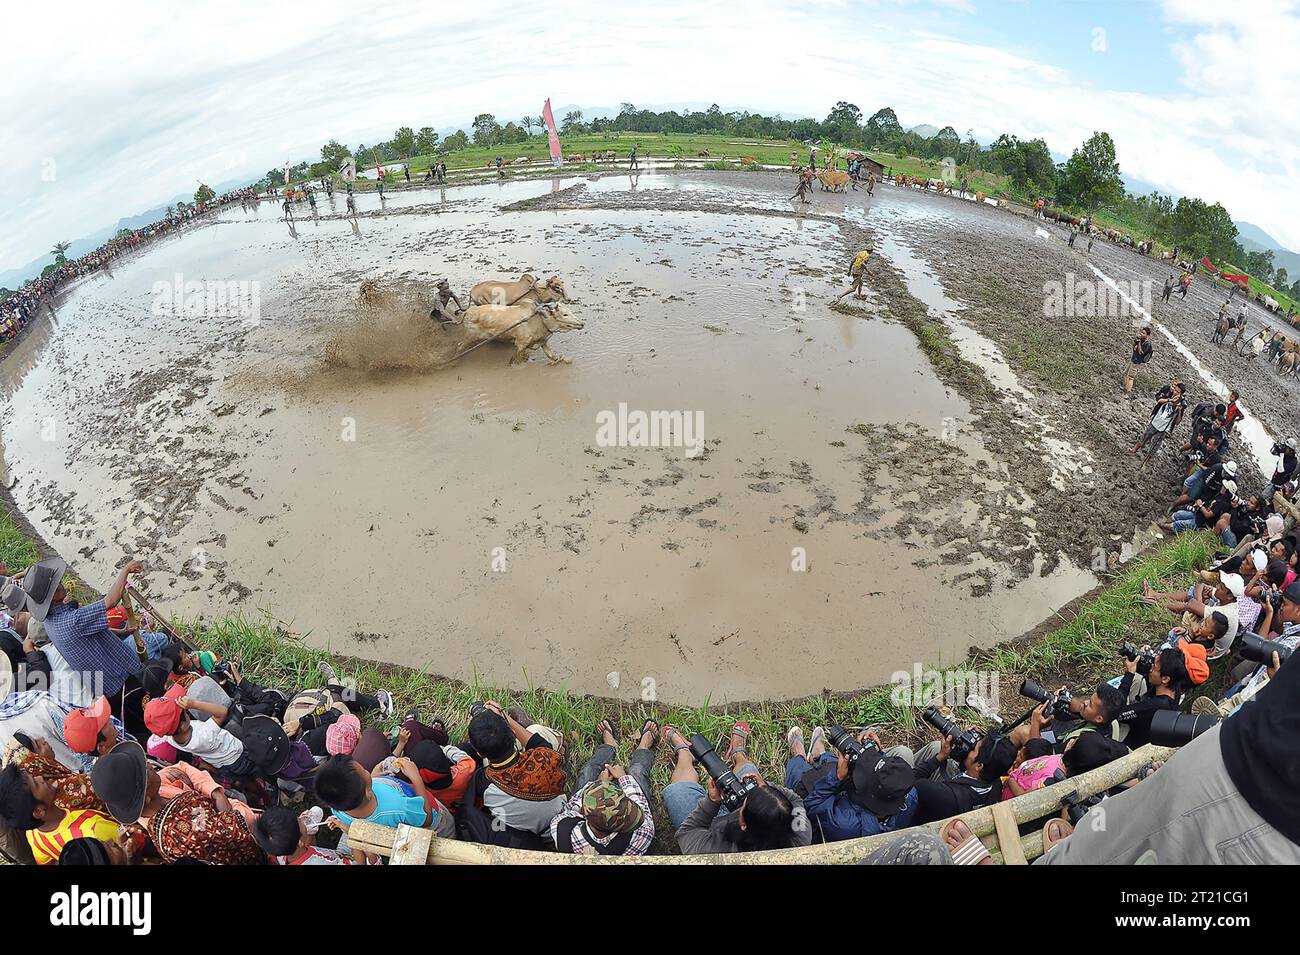 Die ACTIONGELADENEN Bilder des Bullenrennens INDONESIEN, die am Samstag, den 14. Oktober aufgenommen wurden, zeigen, wie Bullen mit einem Jockey auf einem schlammigen Pfad rasen Stockfoto